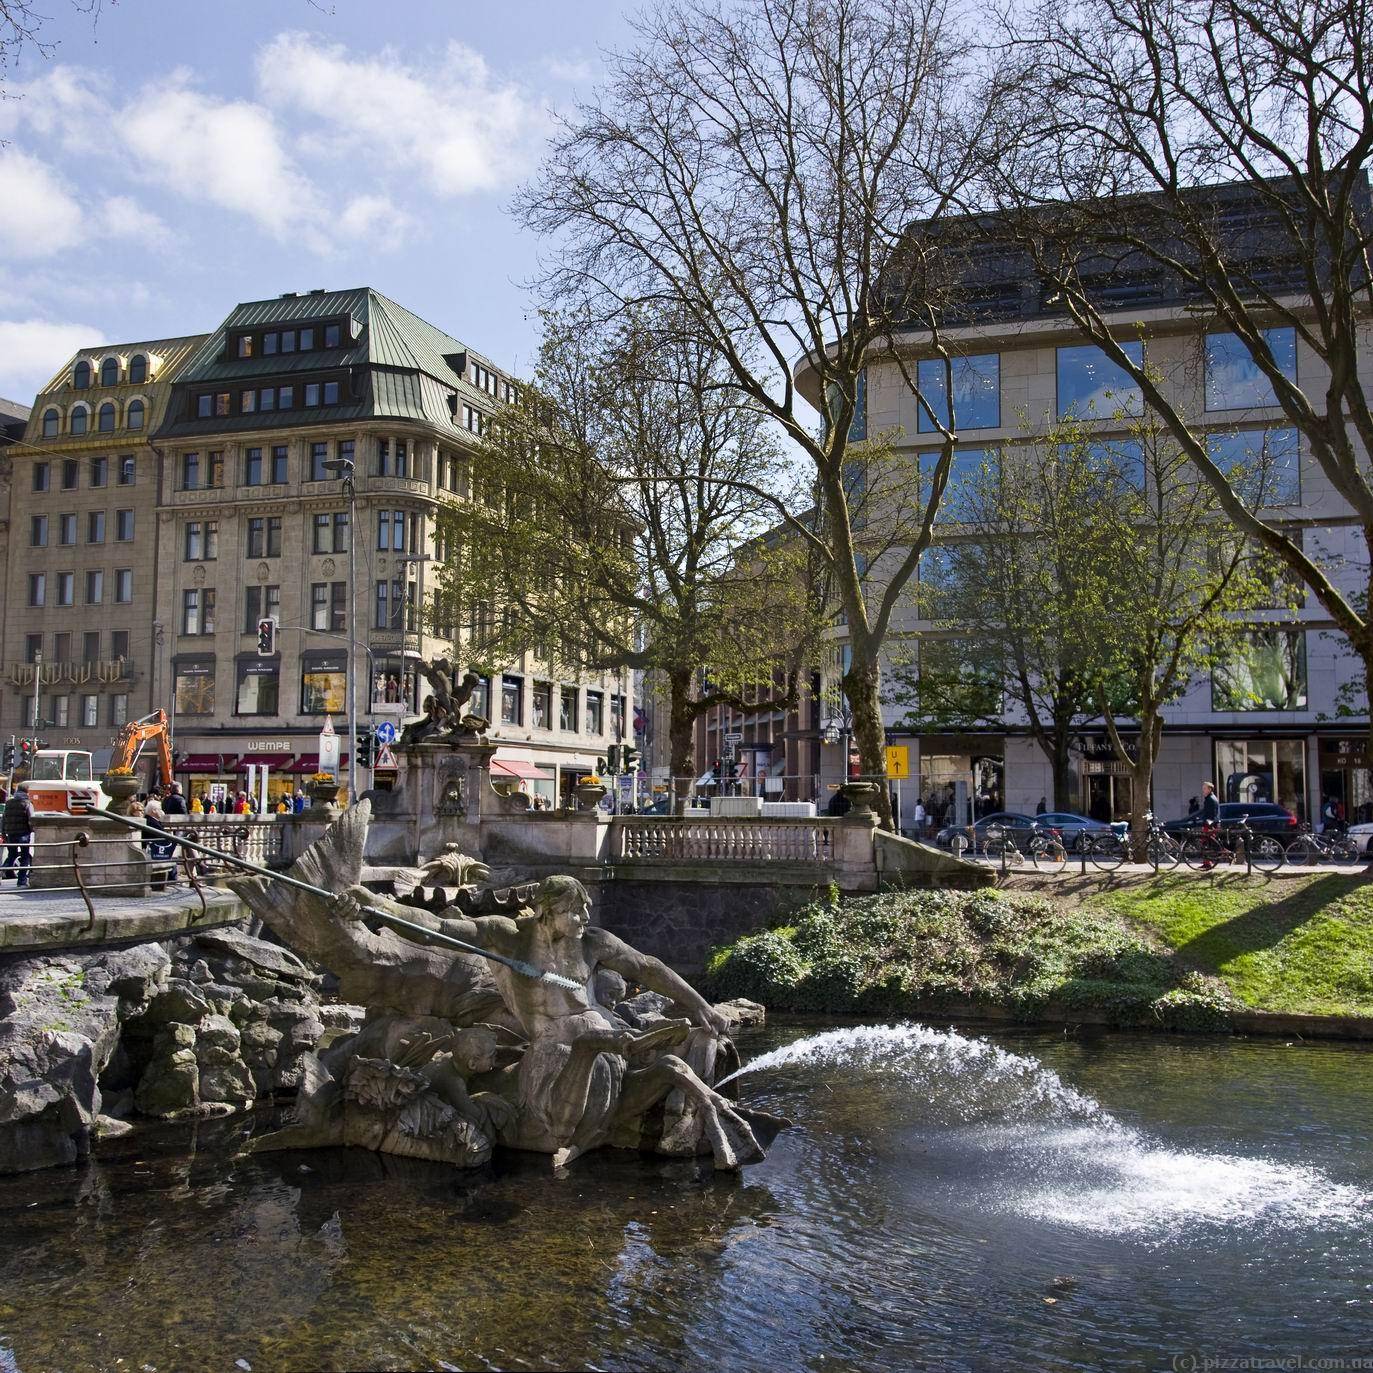 7 мест, которые необходимо посетить в дюссельдорфе | nice places